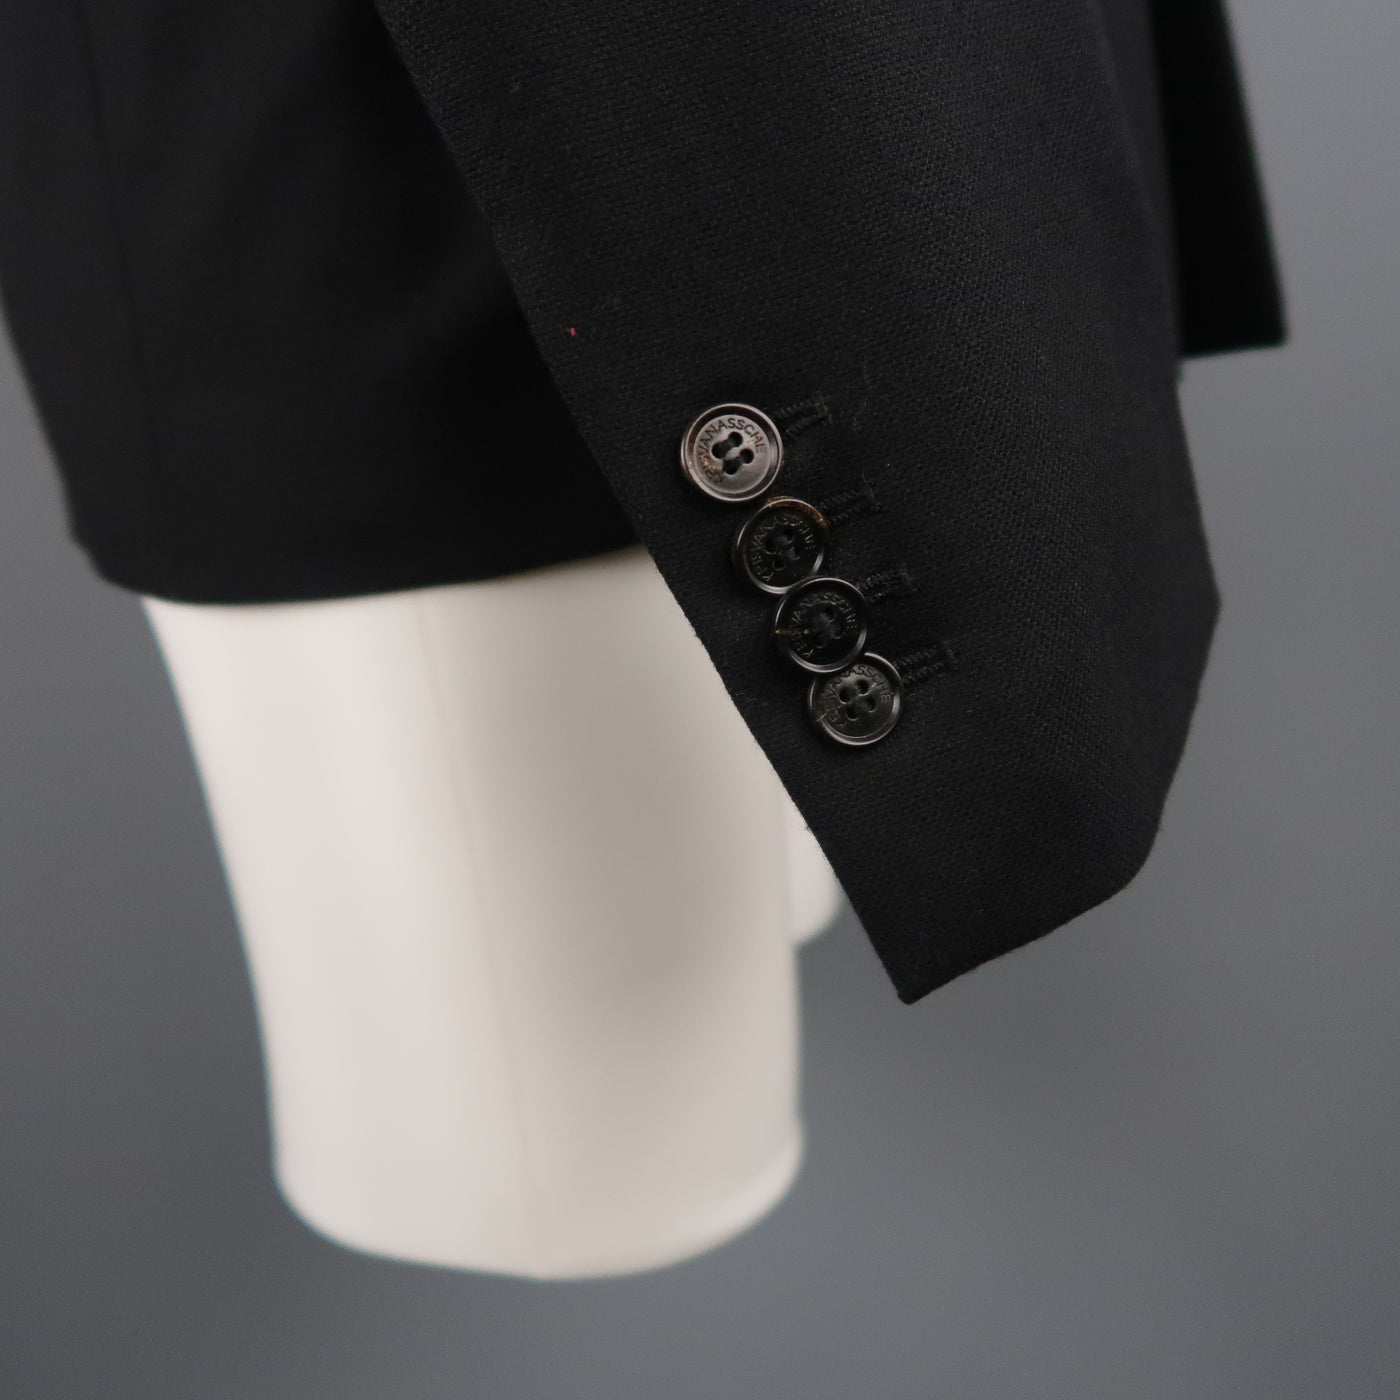 KRIS VAN ASSCHE 42 Short Black Wool Blend Sport Coat